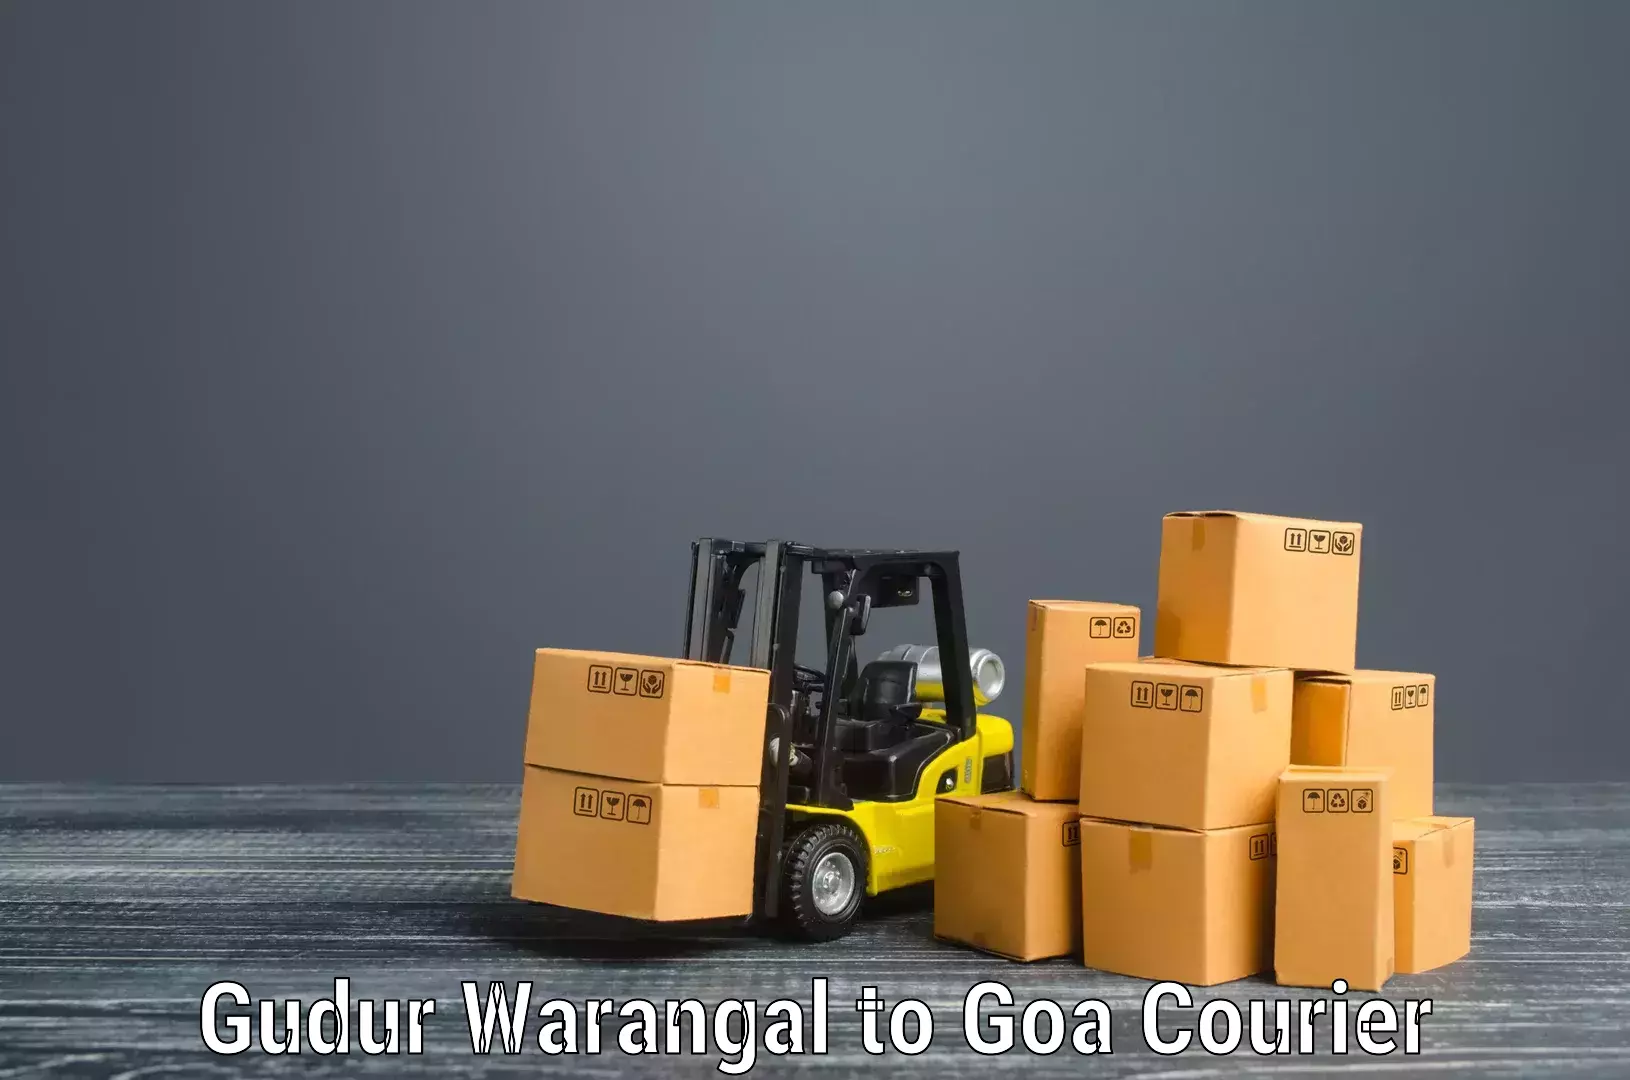 Skilled furniture transporters Gudur Warangal to Margao